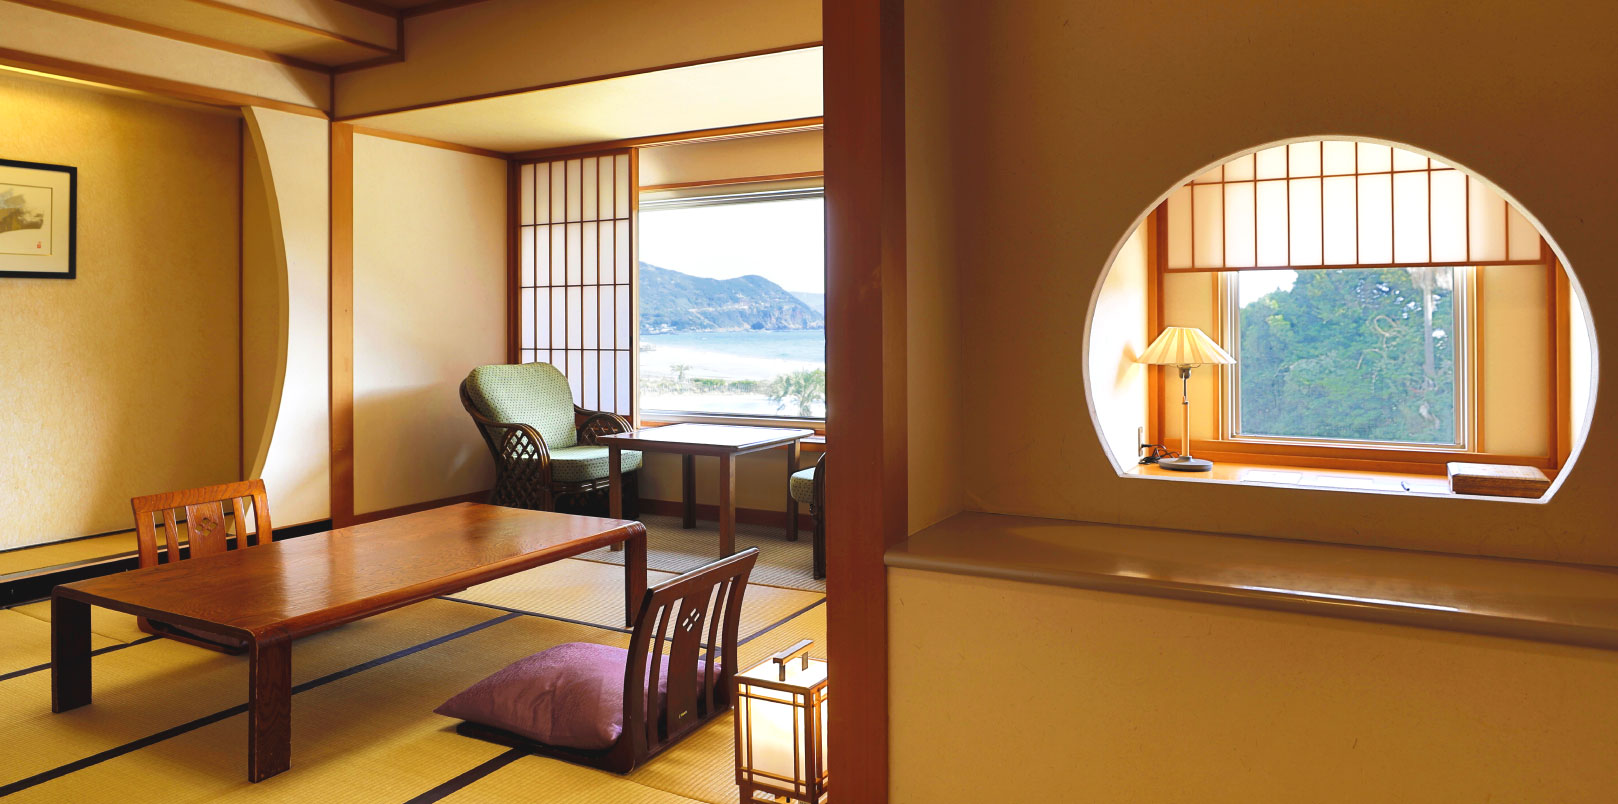 ホテル伊豆急の眺望風呂付き特別室の優雅な室内